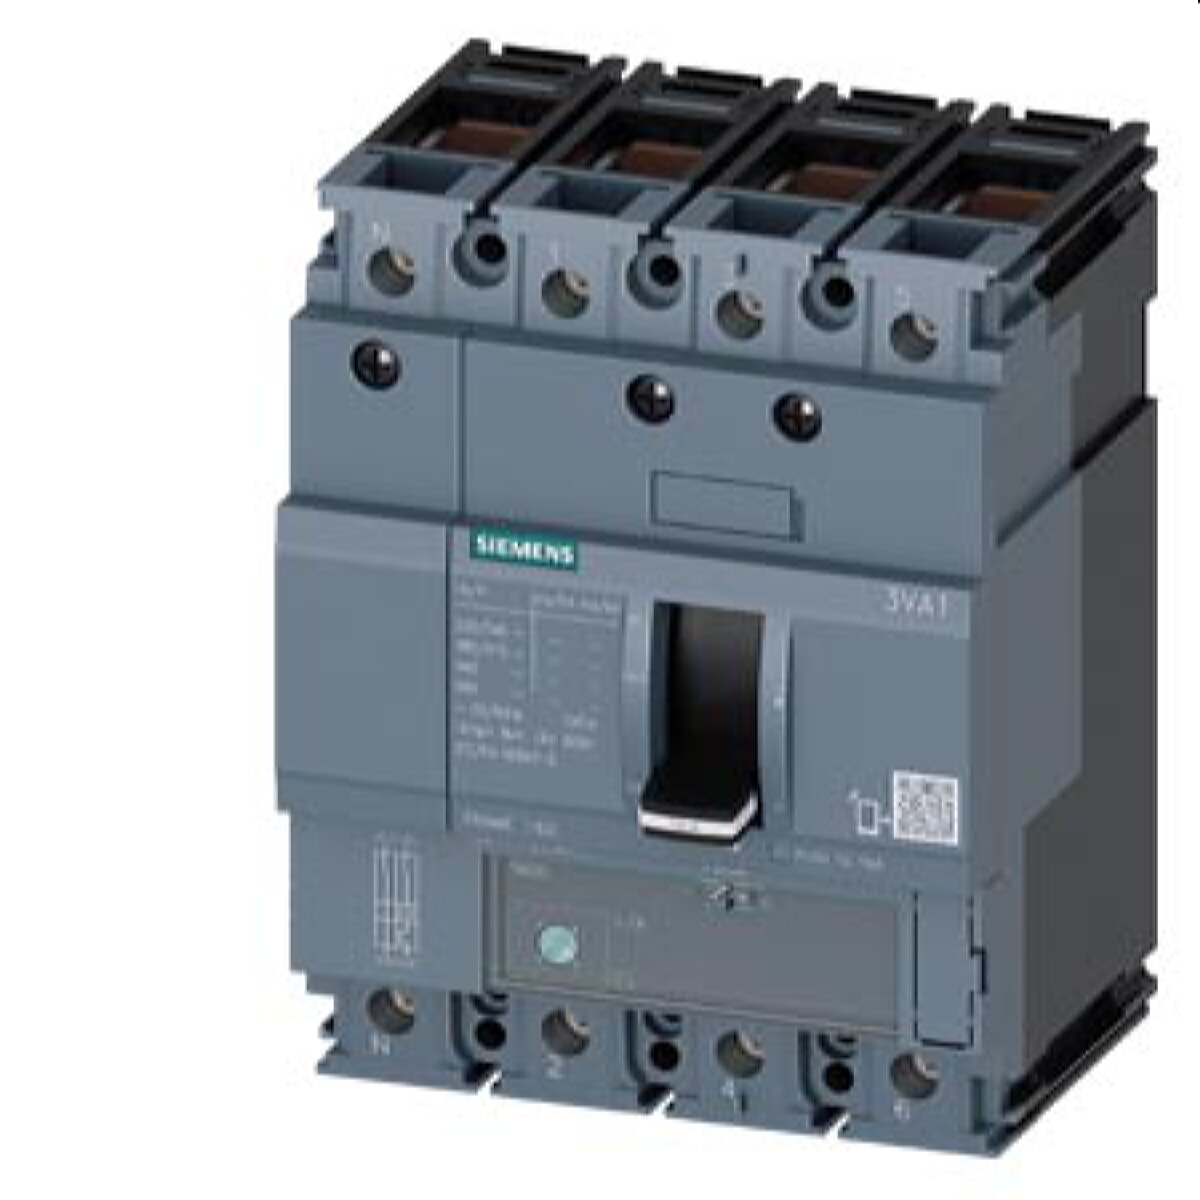 Siemens Leistungsschalter 3VA1 55kA ATFM112-160A 3VA1116-5EE46-0AA0